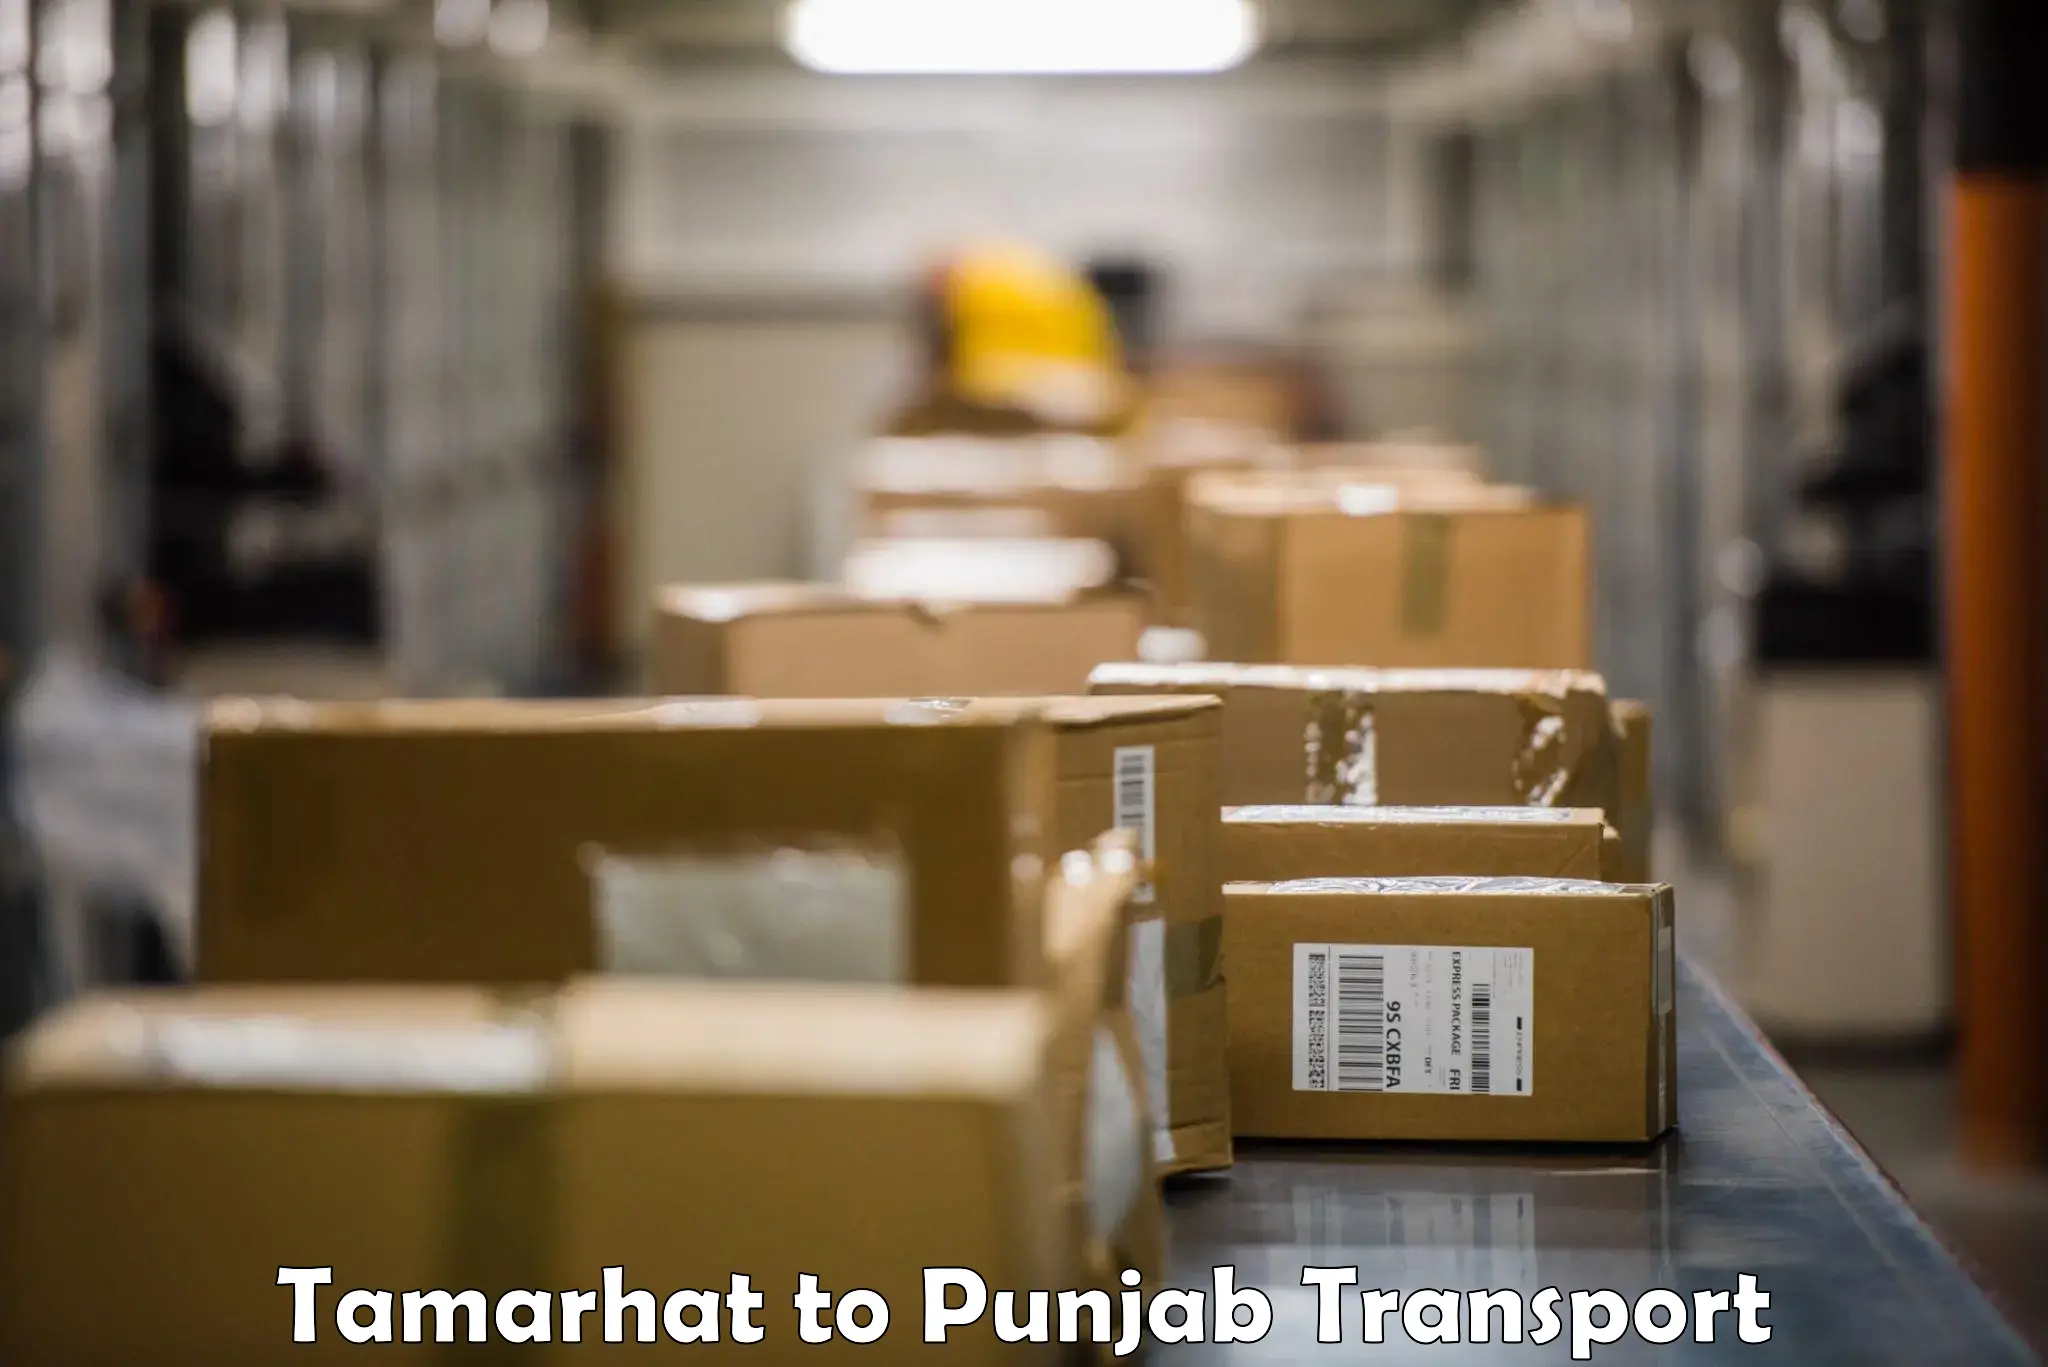 Furniture transport service Tamarhat to Punjab